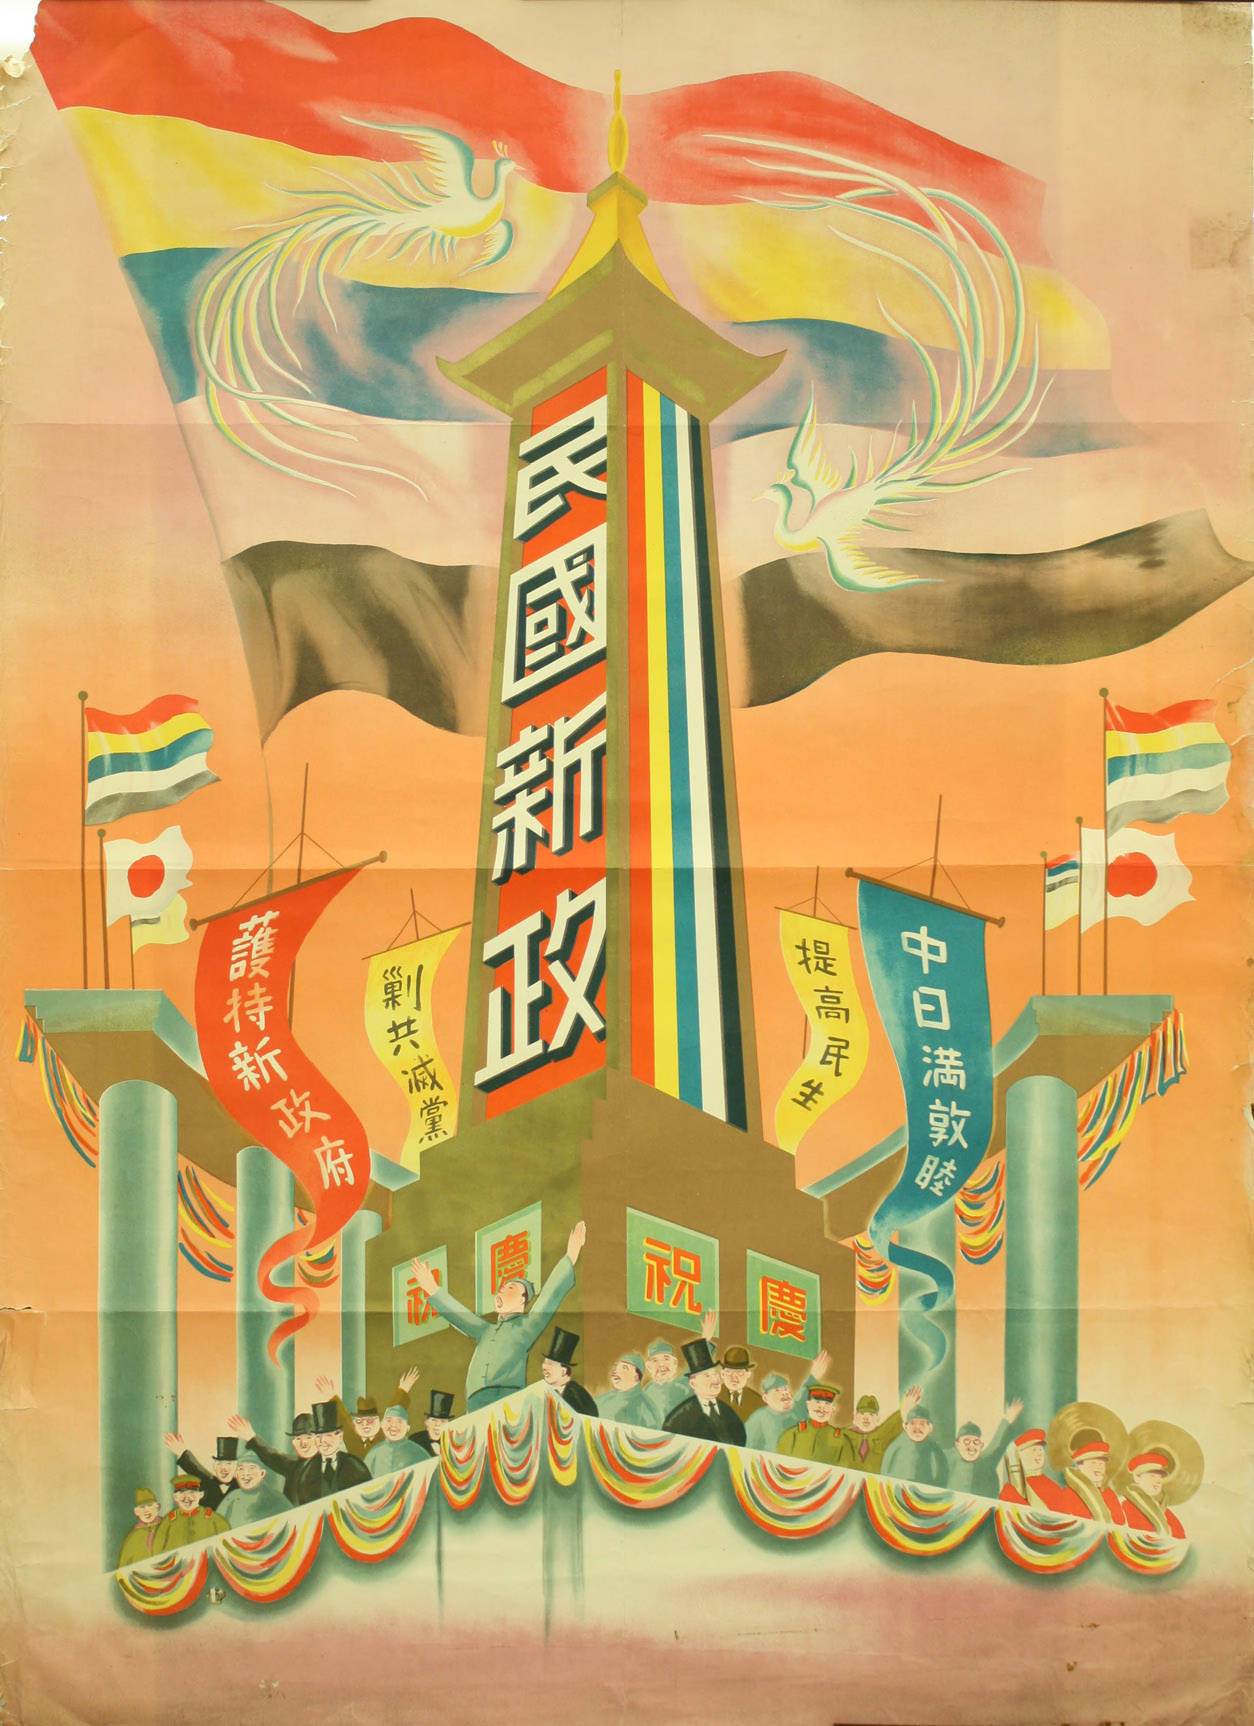 民國新政 - New government for the Republic of China.JPG